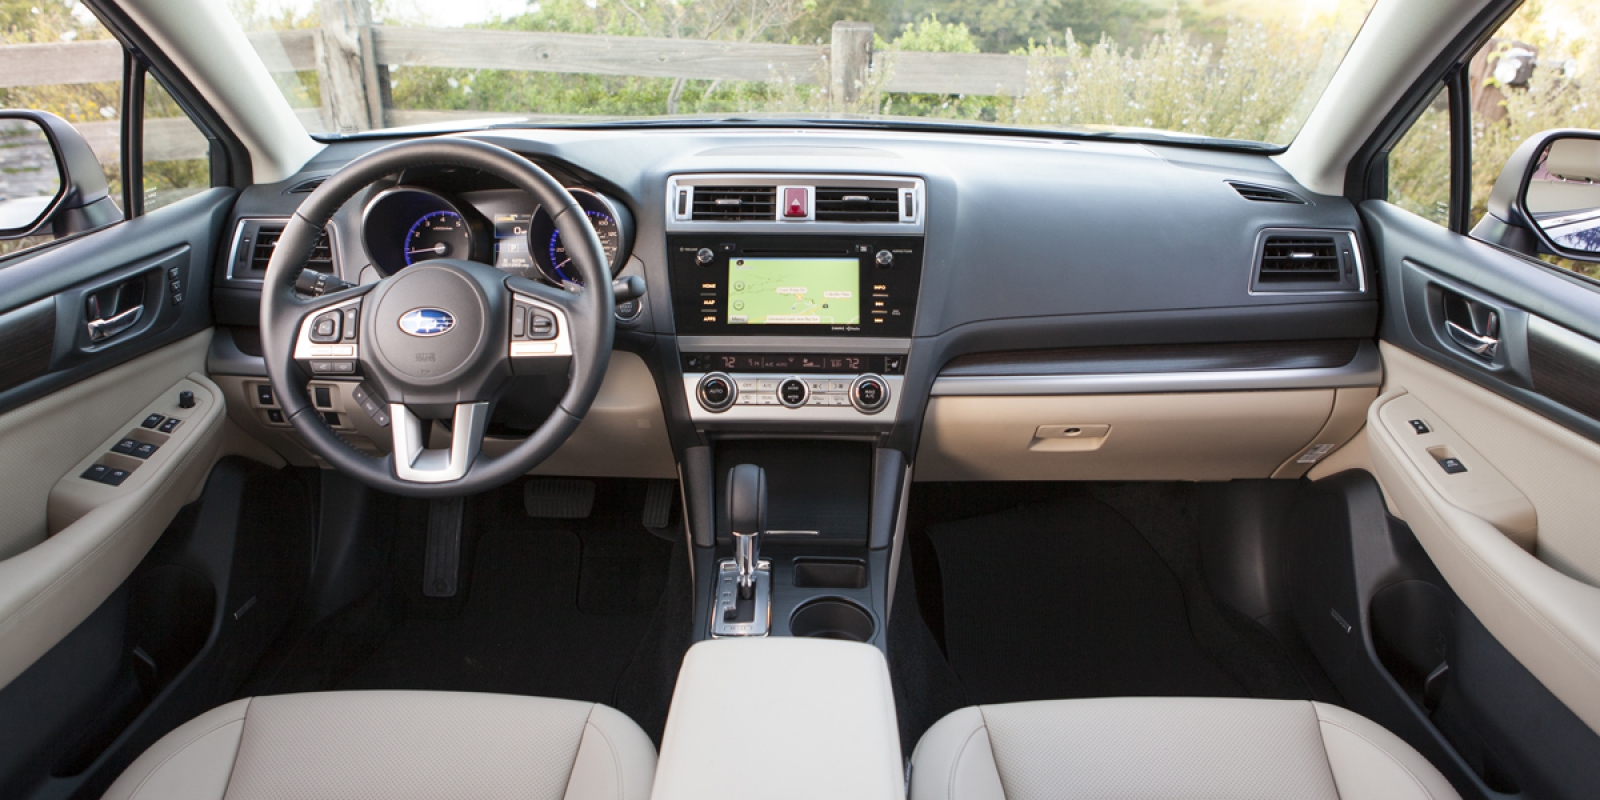 2015 Subaru Legacy Consumer Guide Auto